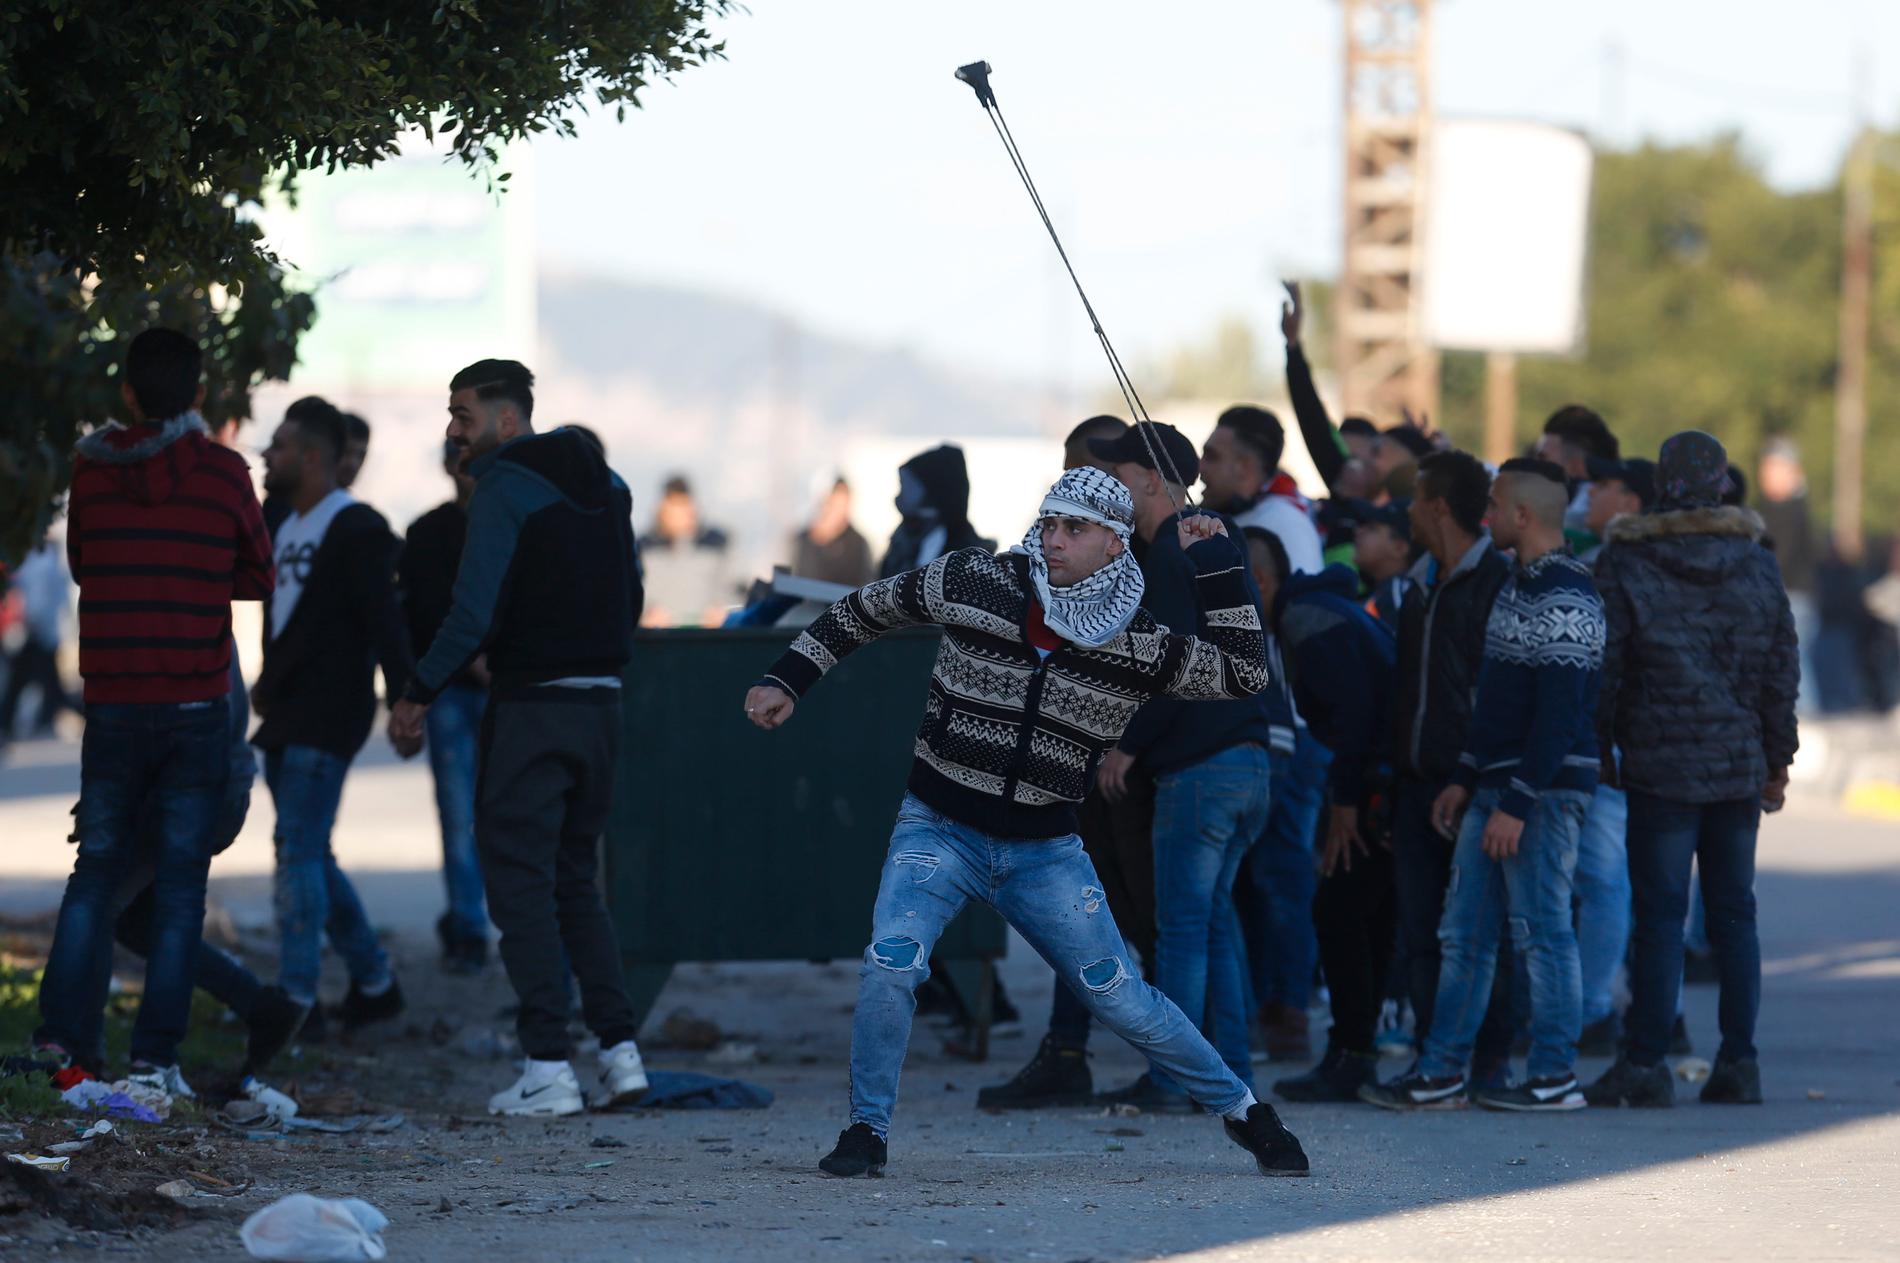 En palestinsk demonstrant kastar sten under sammandrabbningar med israeliska soldater på fredagen. Arkivbild.